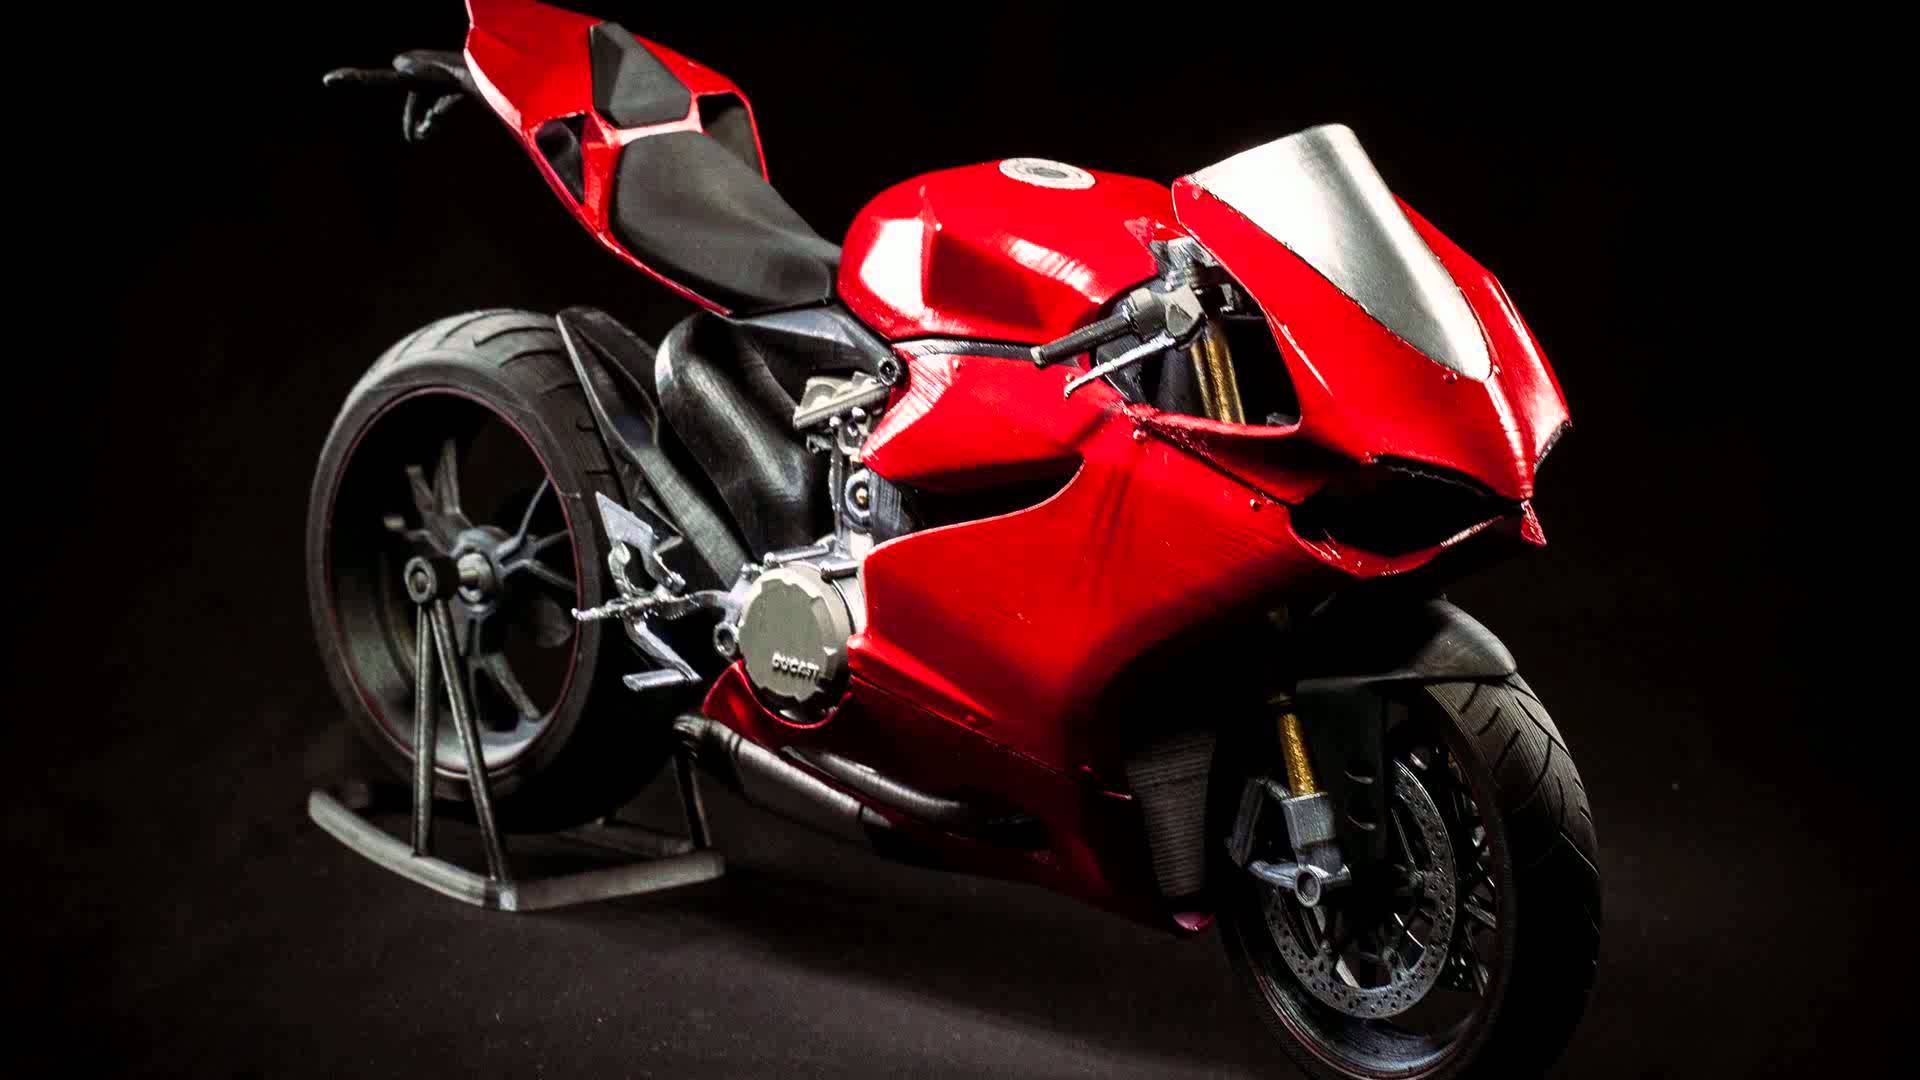 Ducati Superleggera Wallpaper